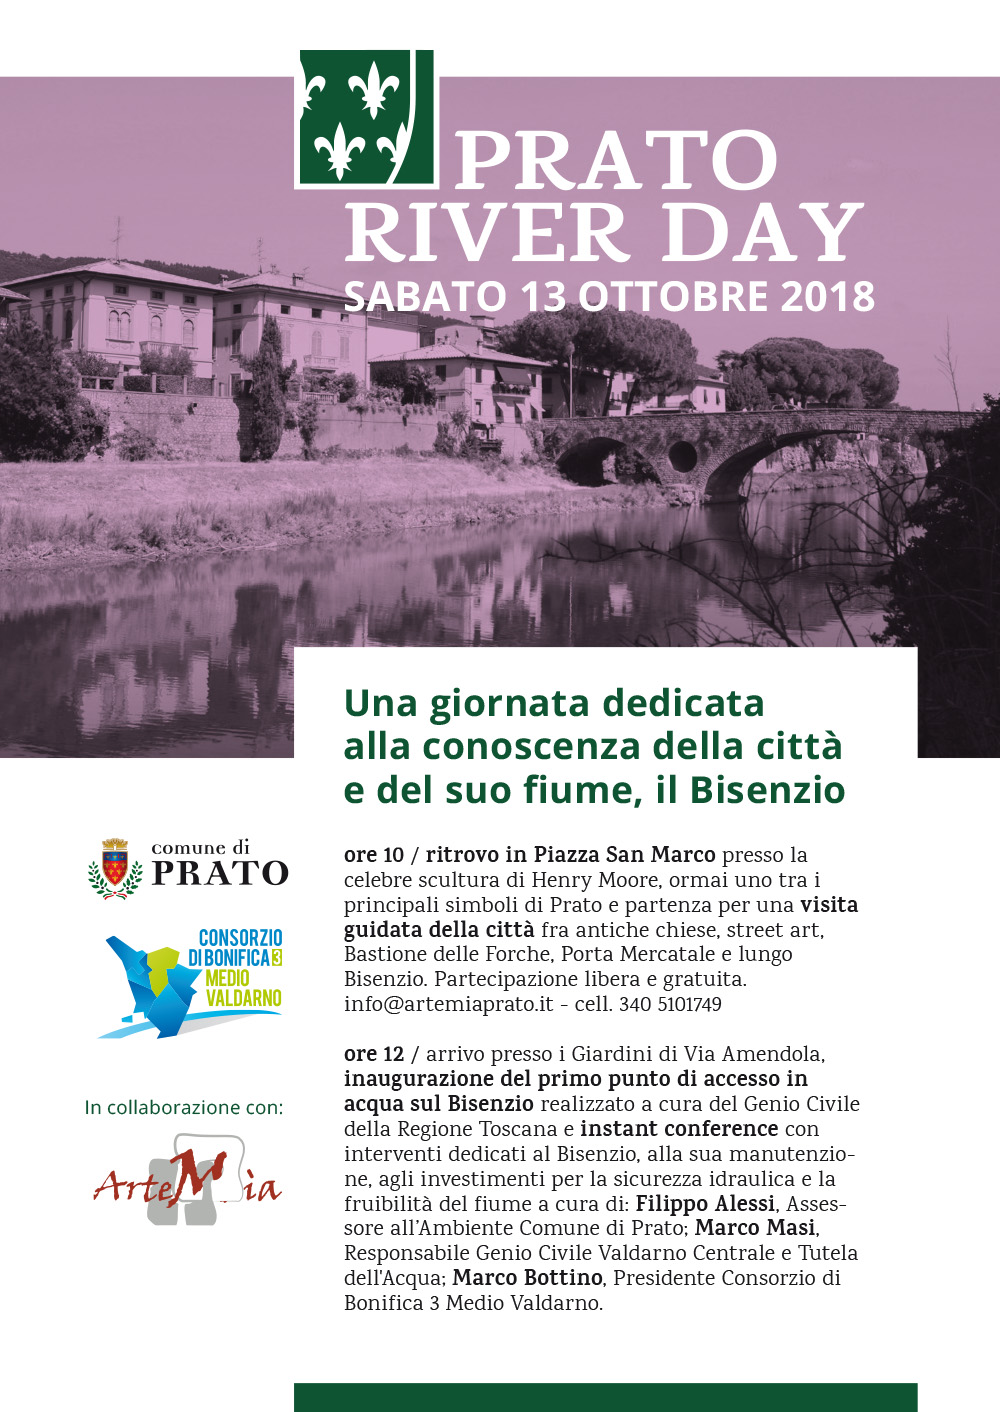 Prato Ruver Day 2018